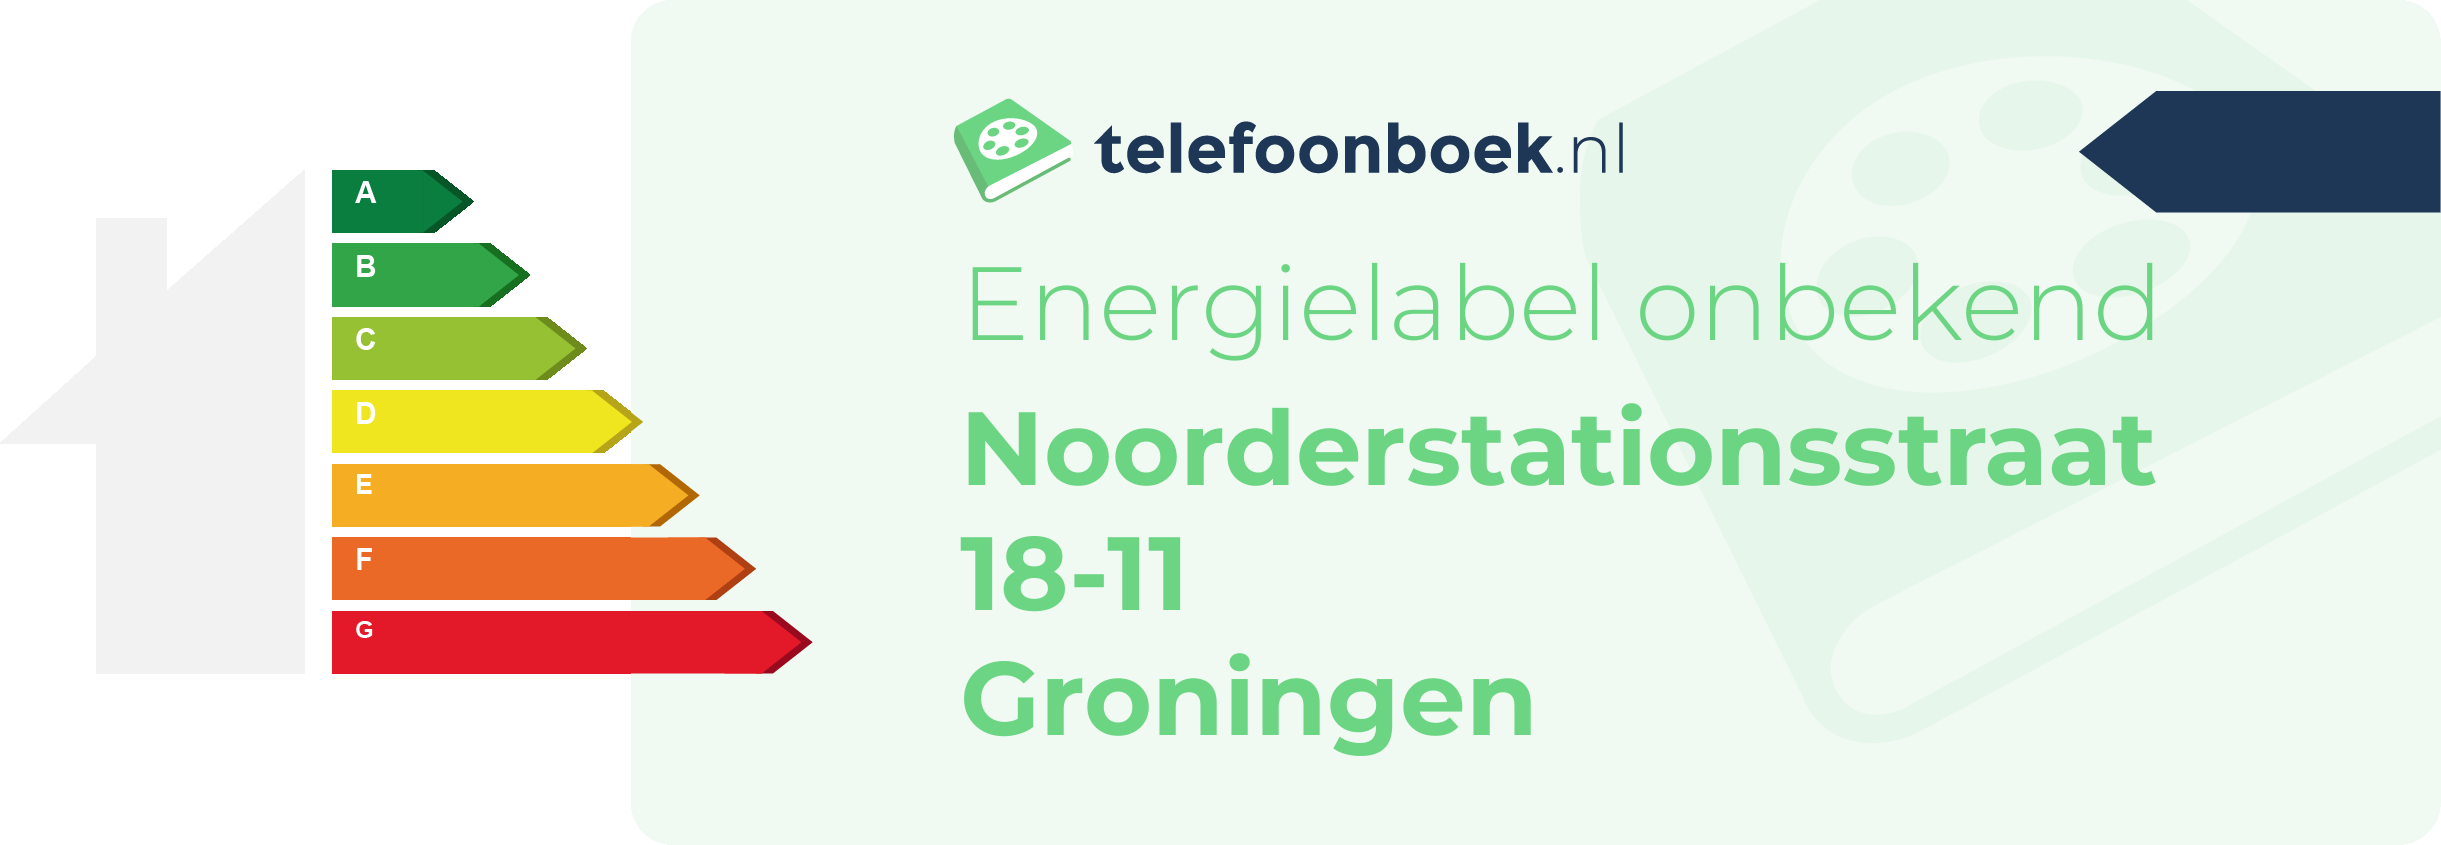 Energielabel Noorderstationsstraat 18-11 Groningen